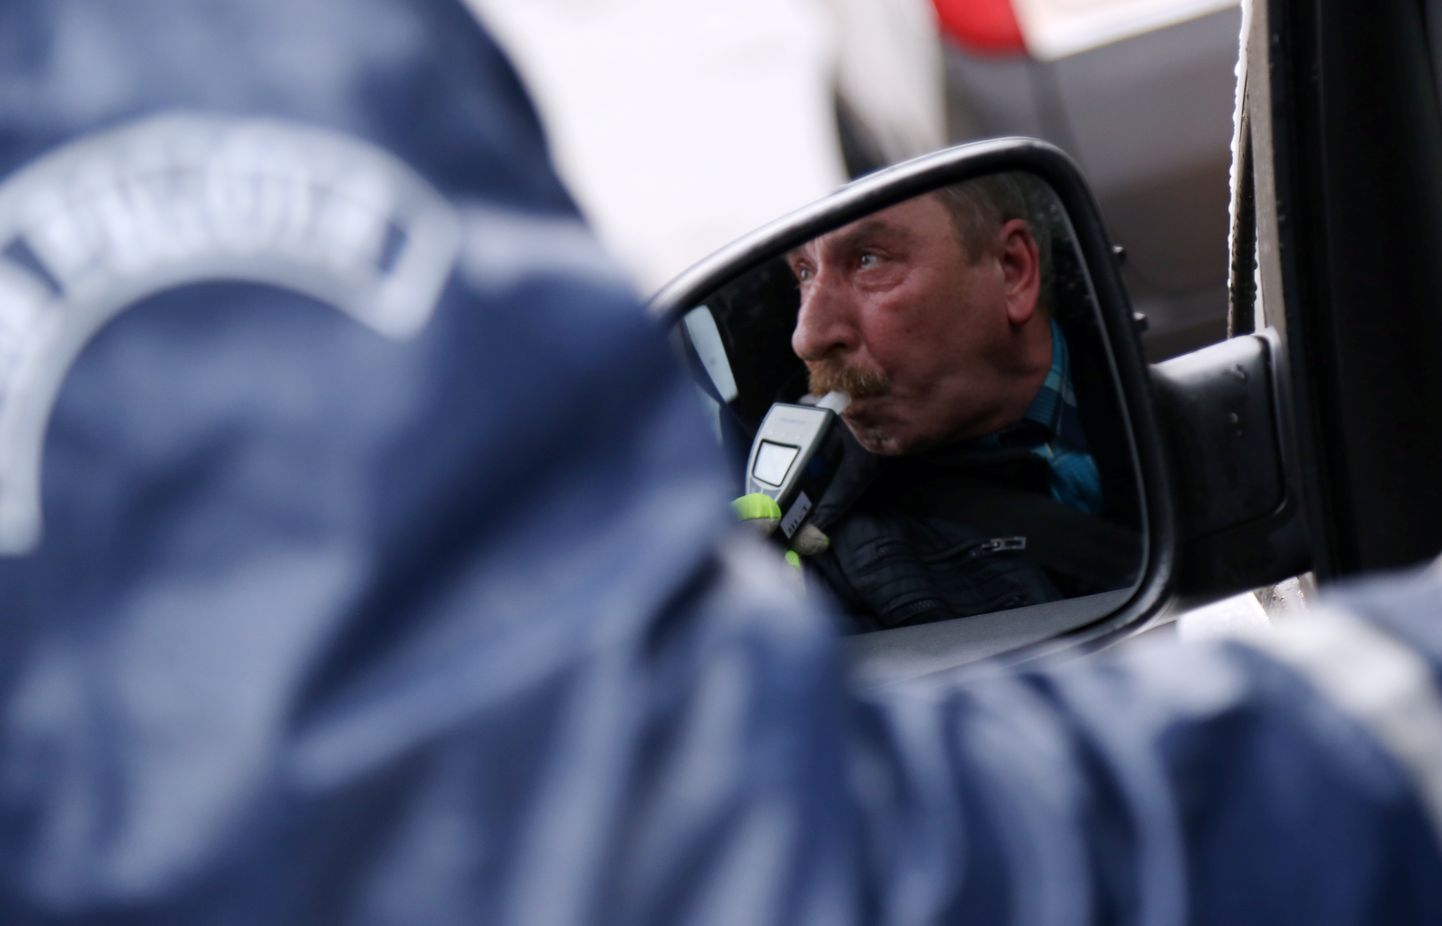 Cотрудники полиции проверяют водителей на содержание алкоголя в выдыхаемом воздухе